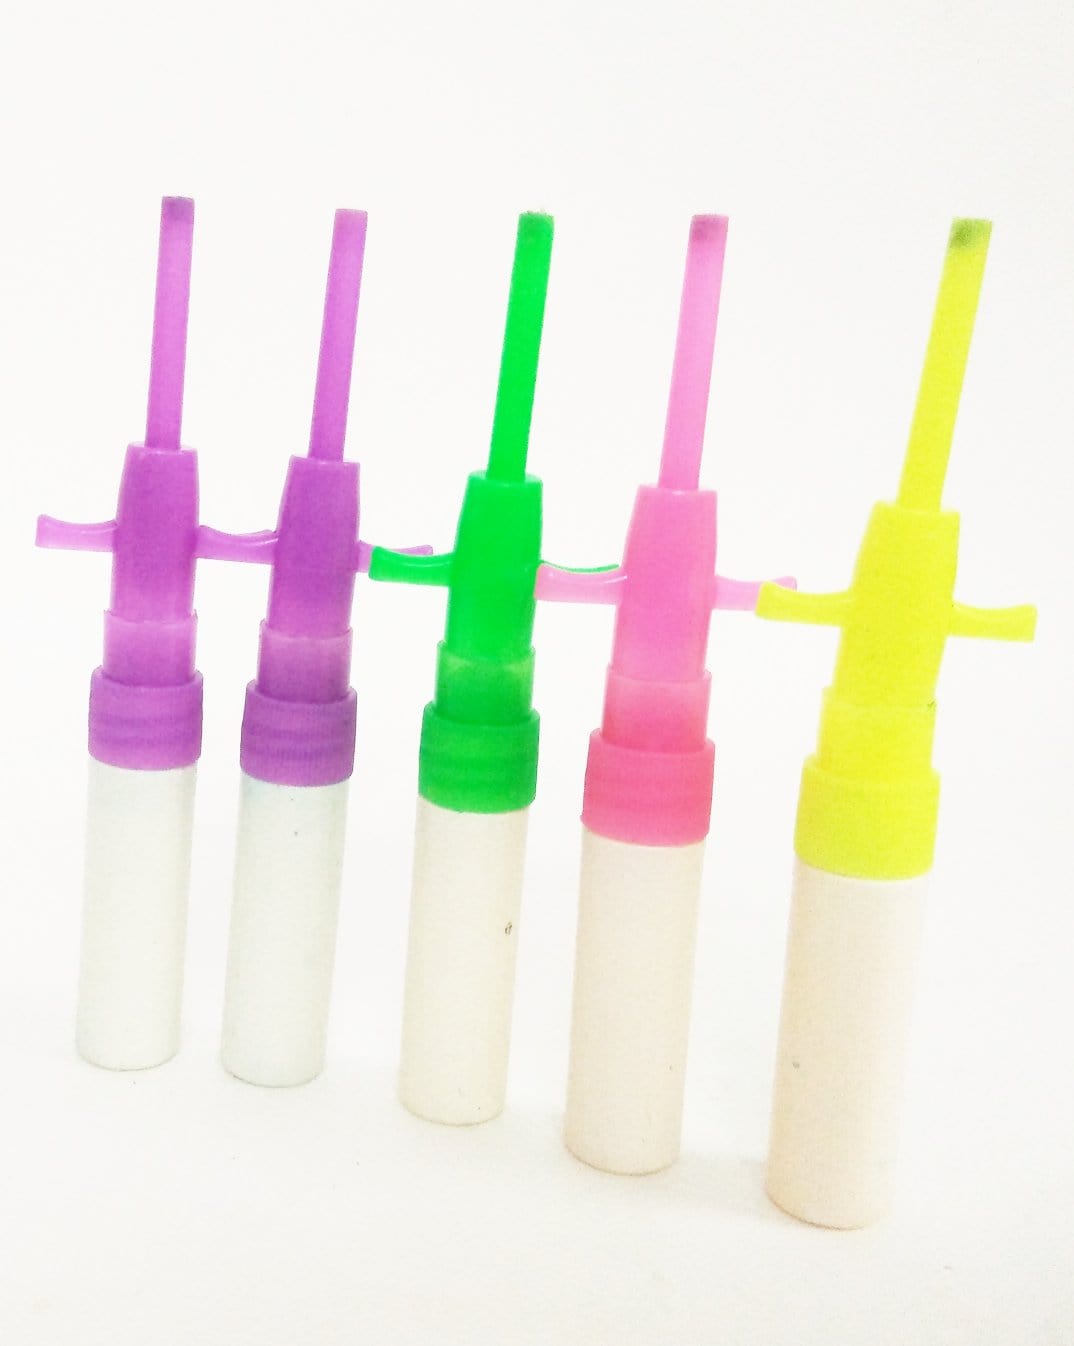 Lamansh Mini Spray Bottles 10 ml / Nano Mist Spray Bottles For Filling Sanitizer Pack of 100 - Lamansh